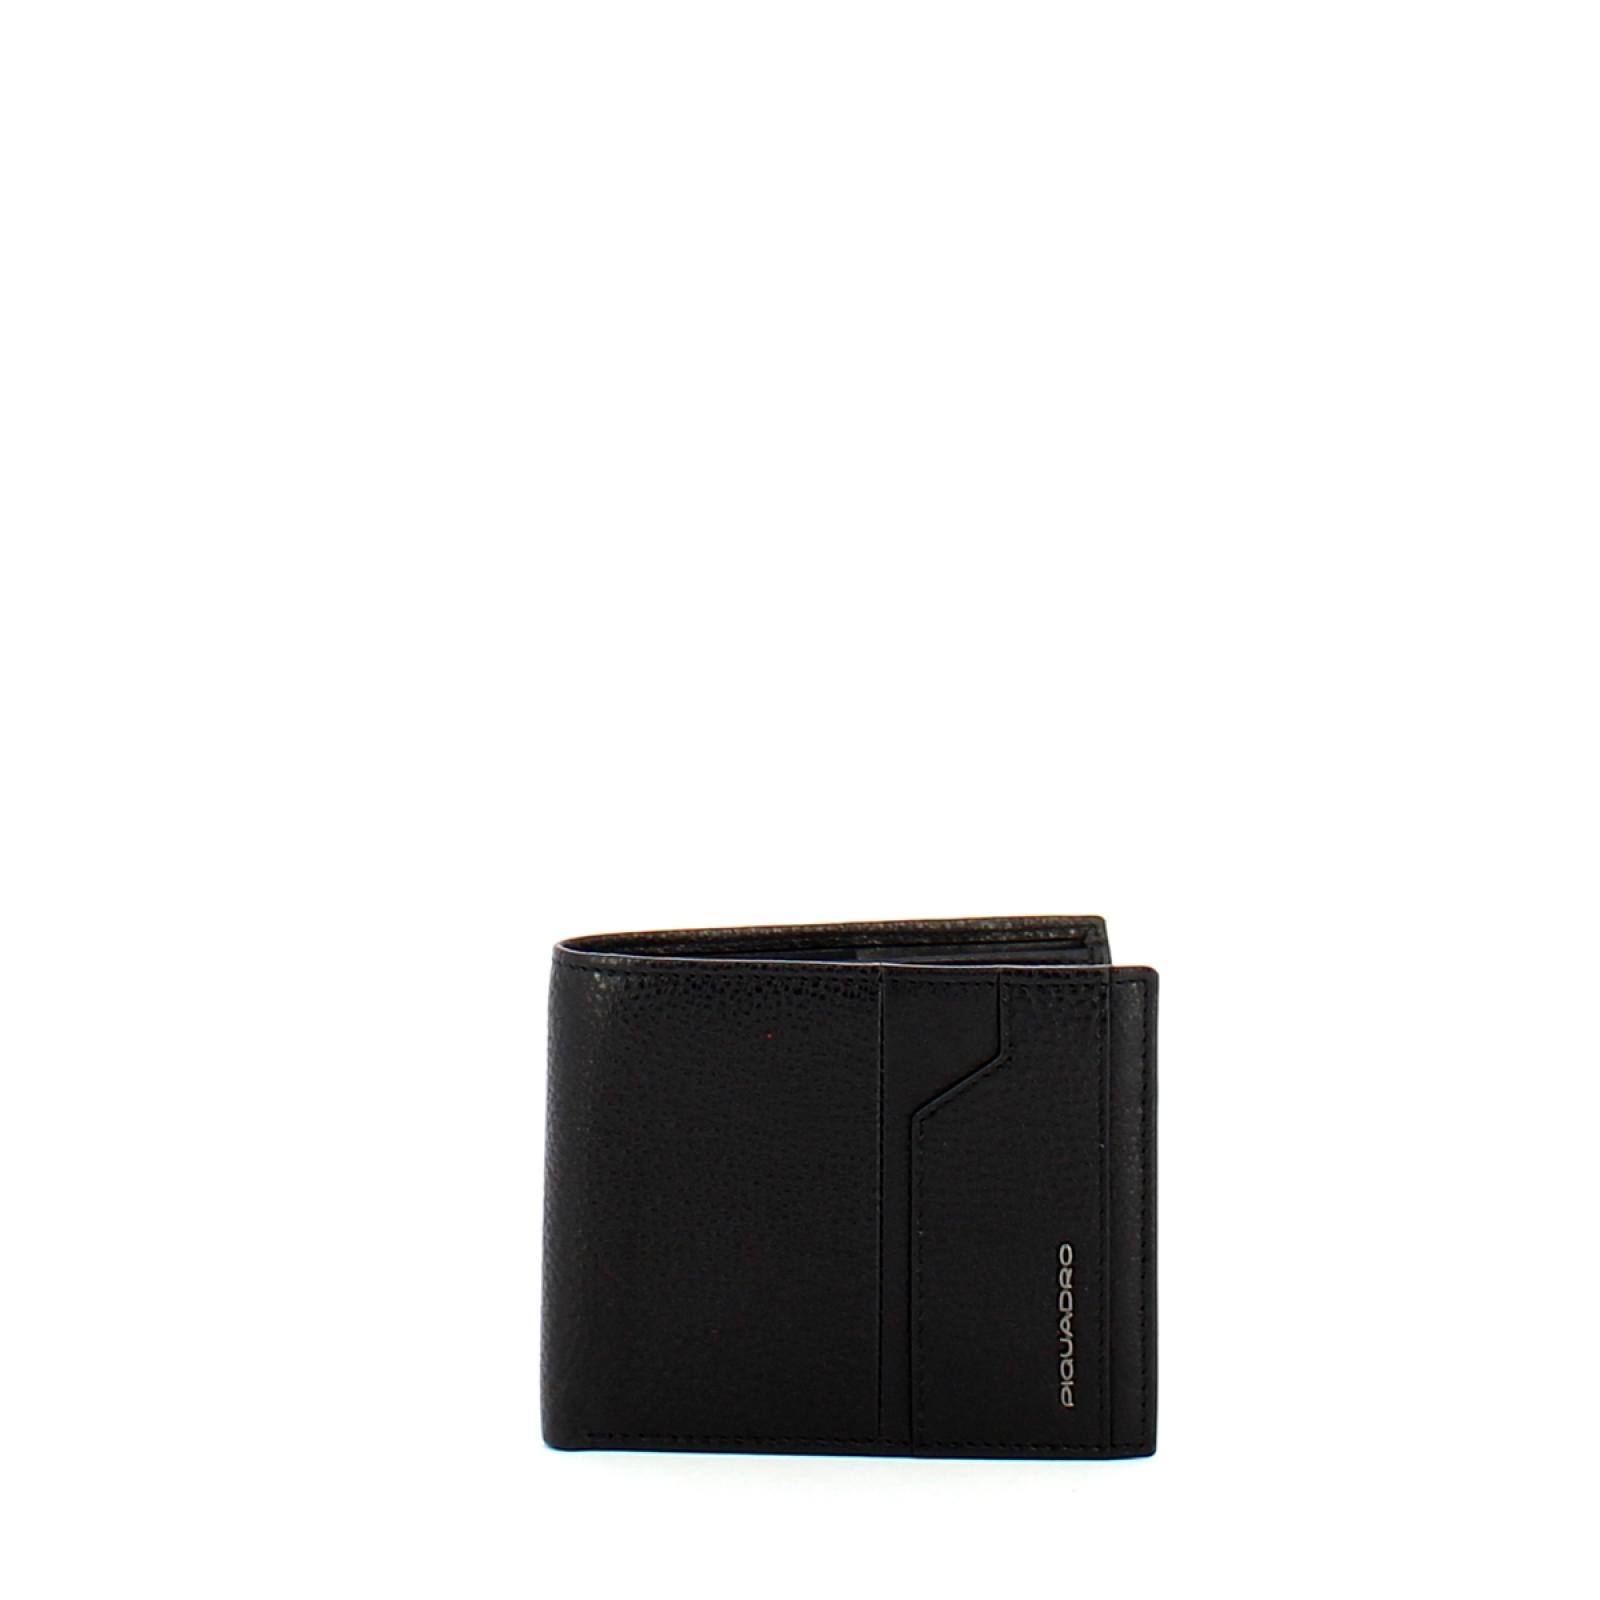 Piquadro Portafogli RFID Hakone con ID removibile - 1